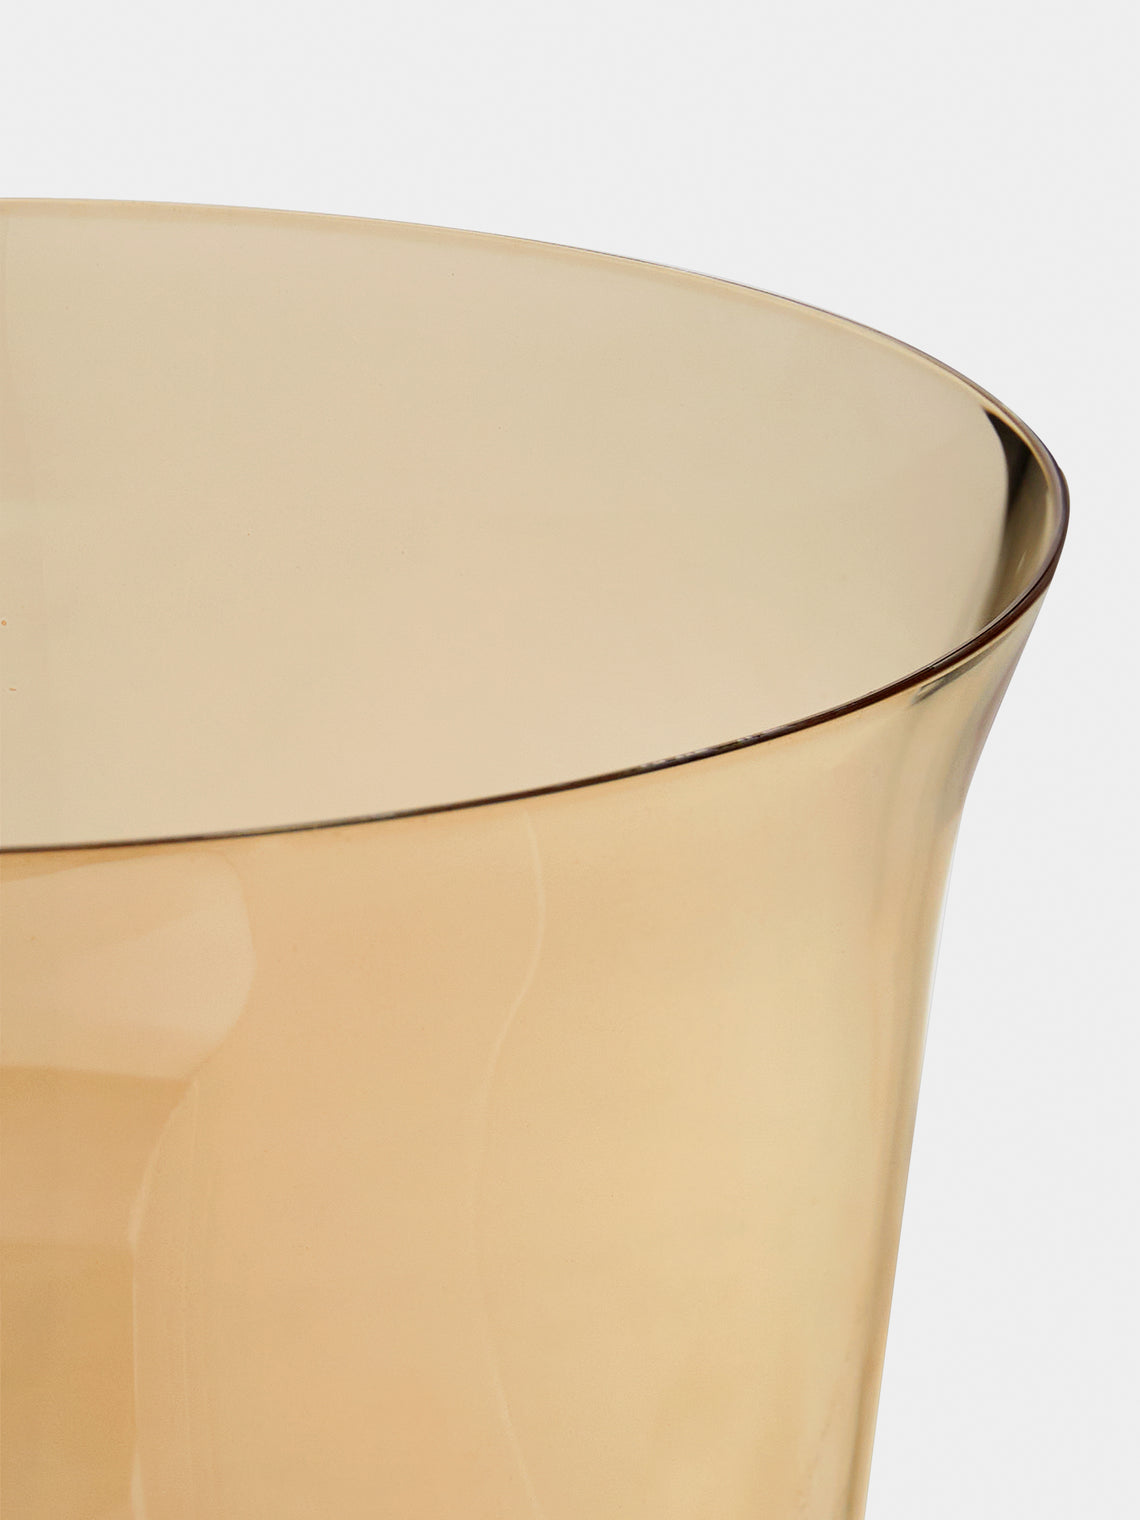 Lobmeyr - Gold Lustre Patrician Vase on Stem - Gold - ABASK